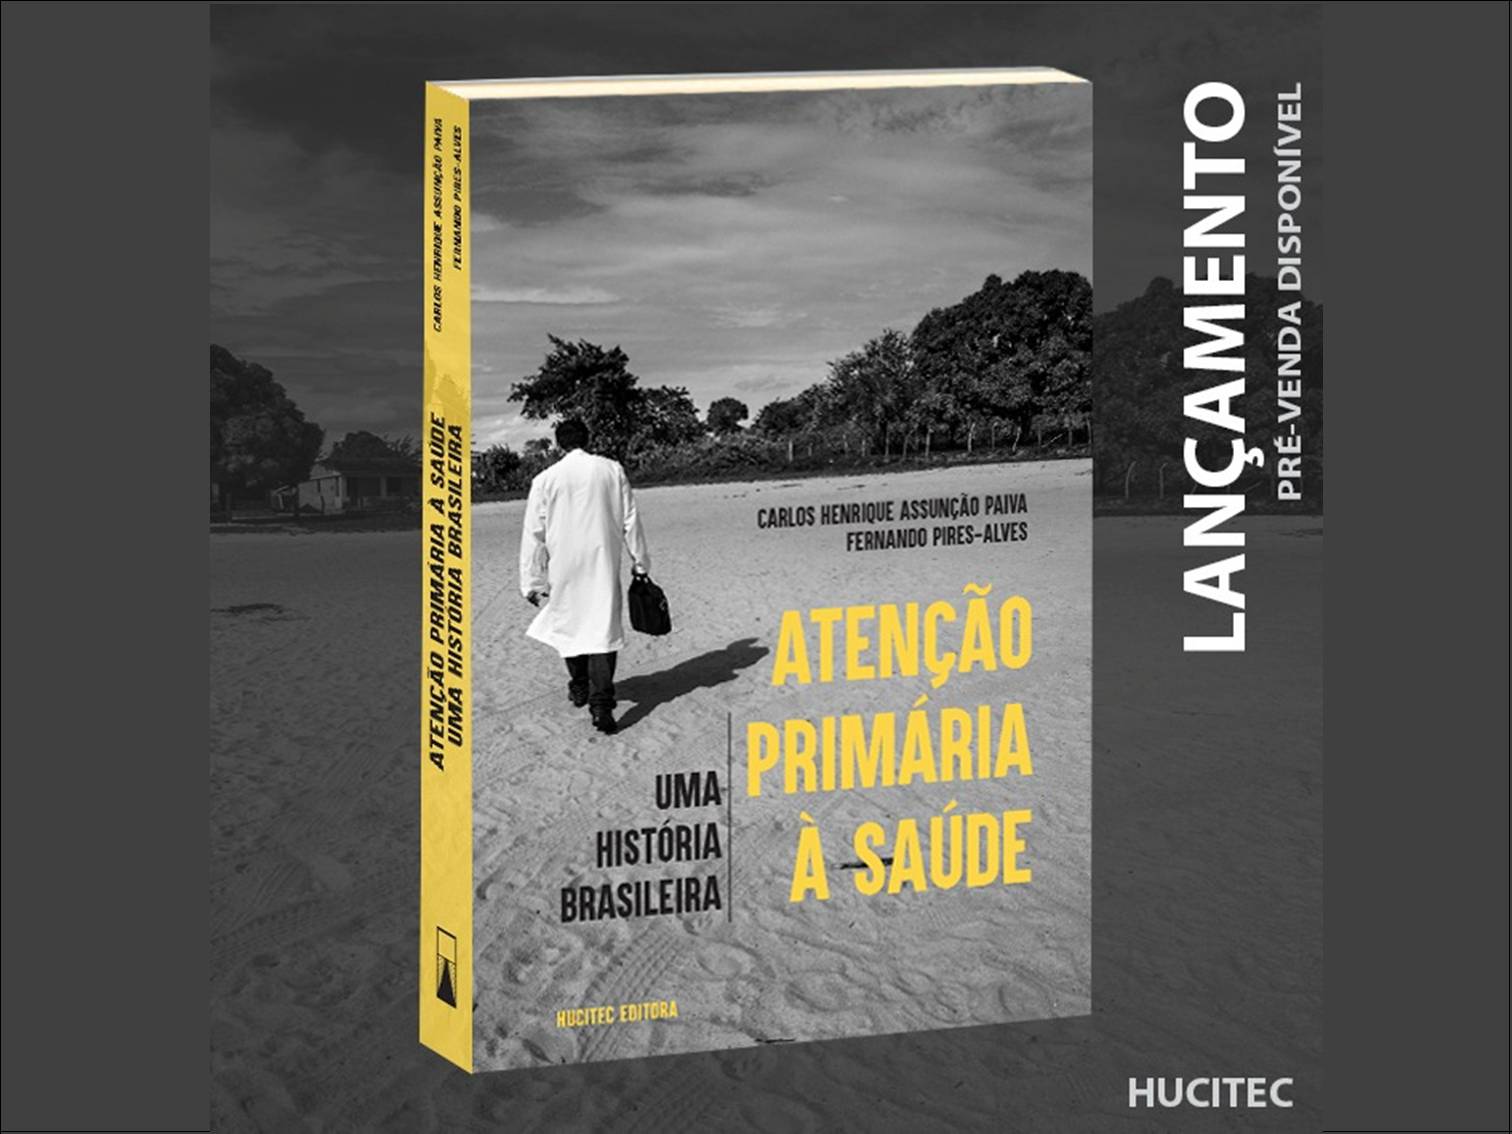 Livro “Atenção Primária à Saúde: uma história brasileira”, de Carlos Paiva e Fernando Pires-Alves